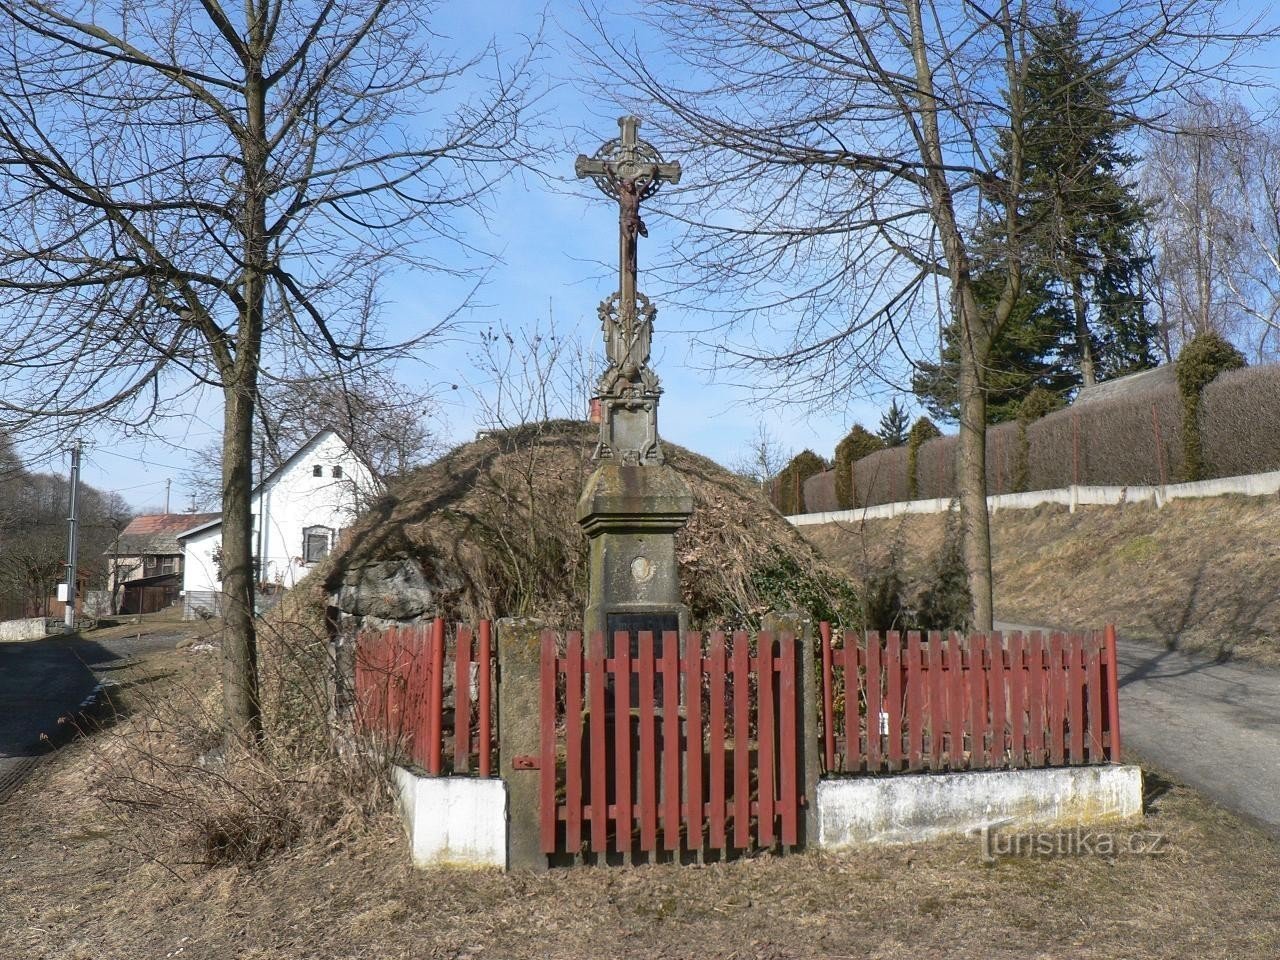 Velenovy, uma cruz na aldeia